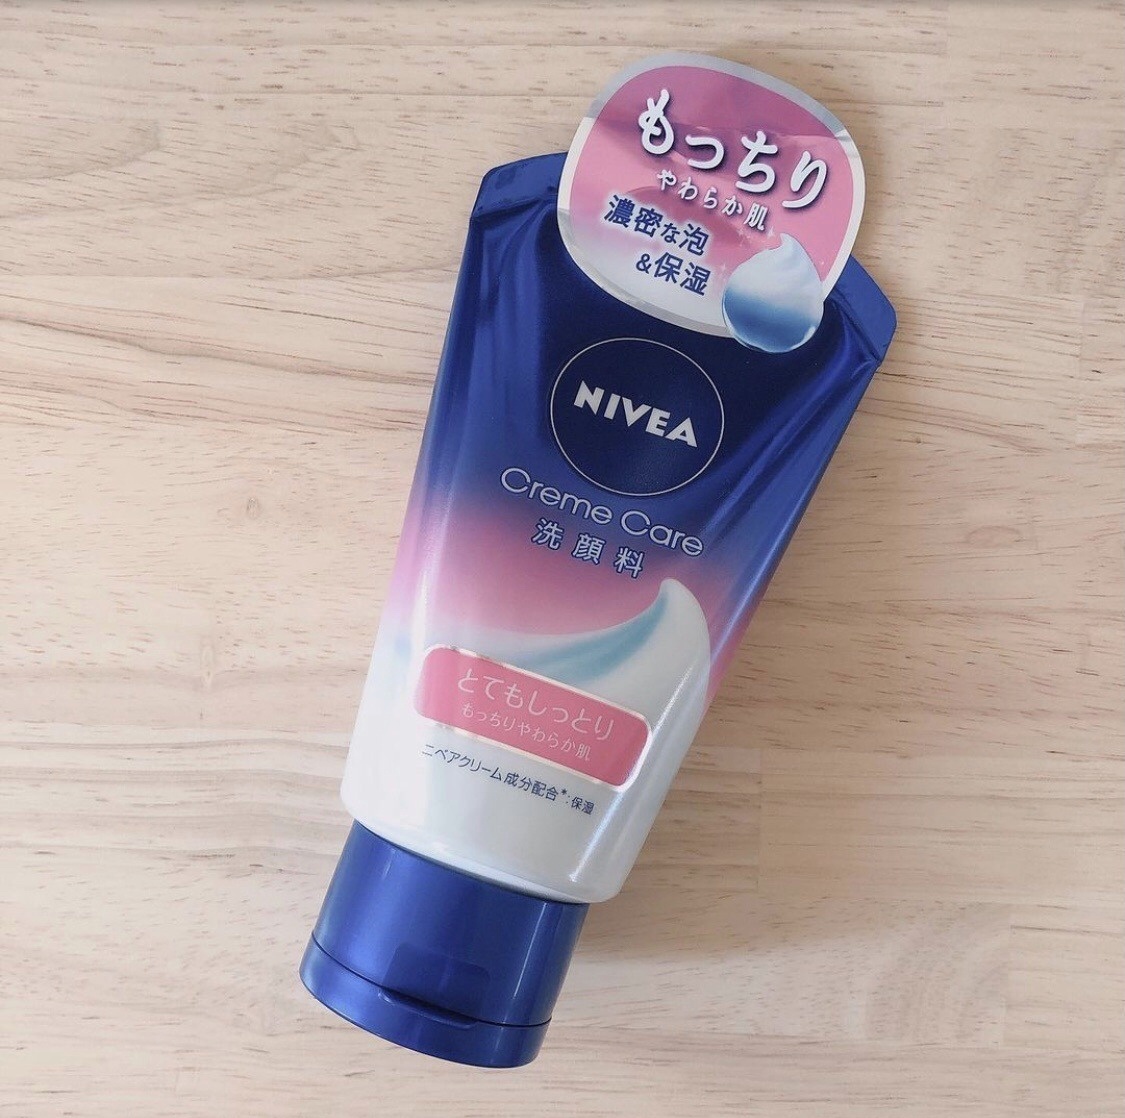 NIVEA(ニベア) クリームケア 洗顔料 とてもしっとりの良い点・メリットに関するみーさん¨̮⸝⋆さんの口コミ画像1